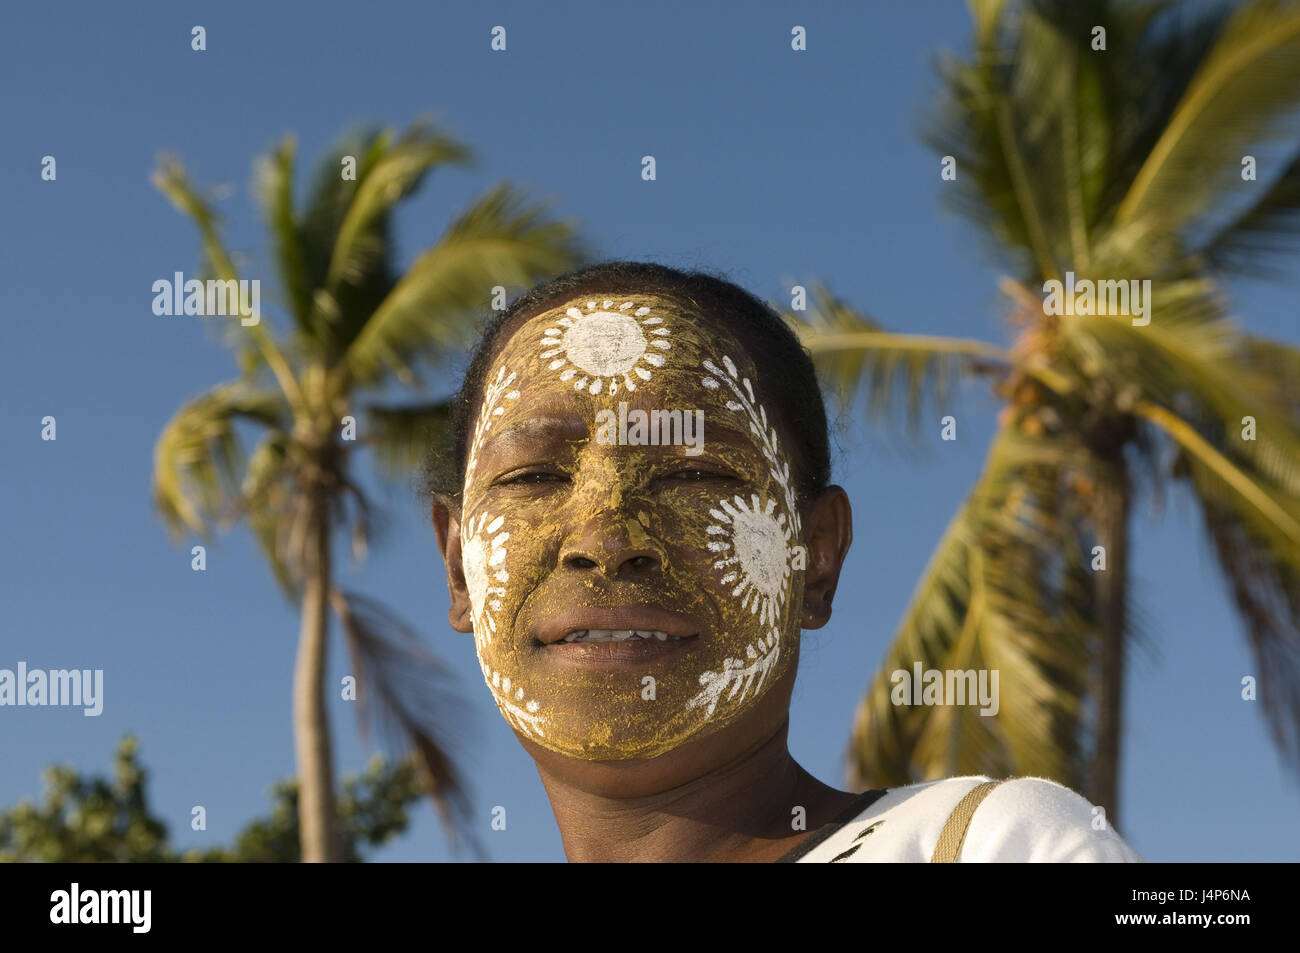 Madagascar, isola di Nosy Be, donna, pittura del viso, ritratto, nessun modello di rilascio, Foto Stock